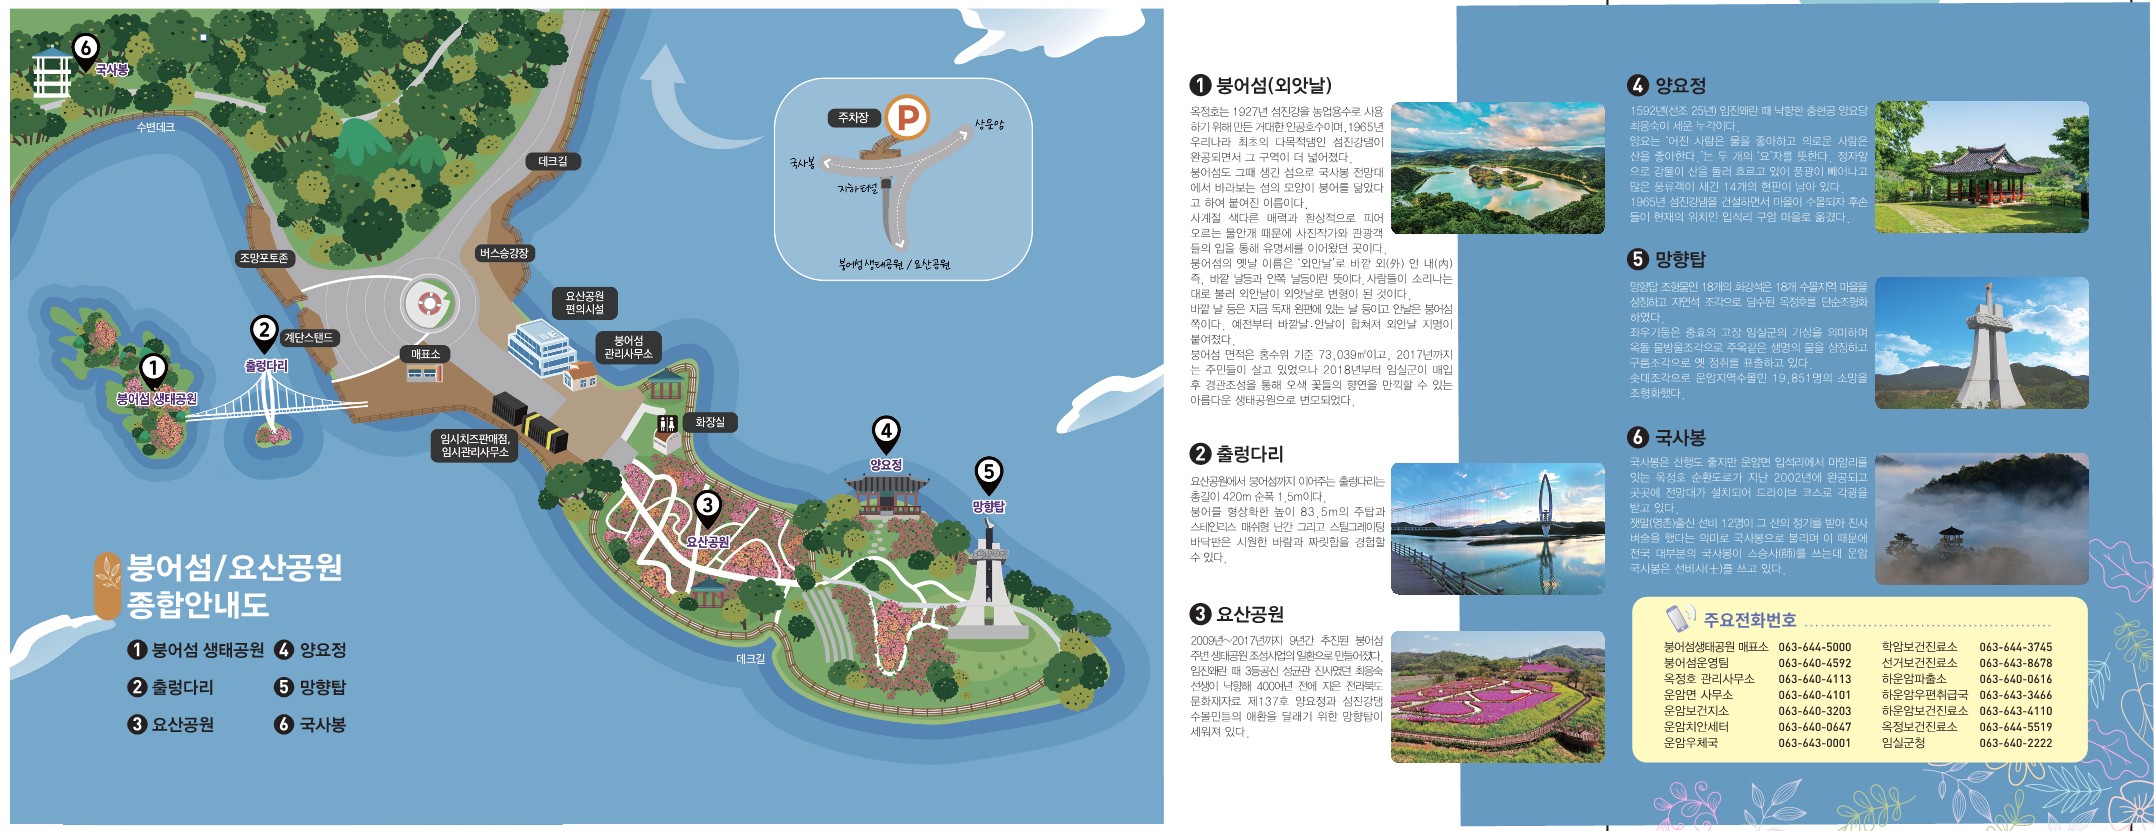 24붕어섬생태공원사회계층배려입장요감면(2).jpg